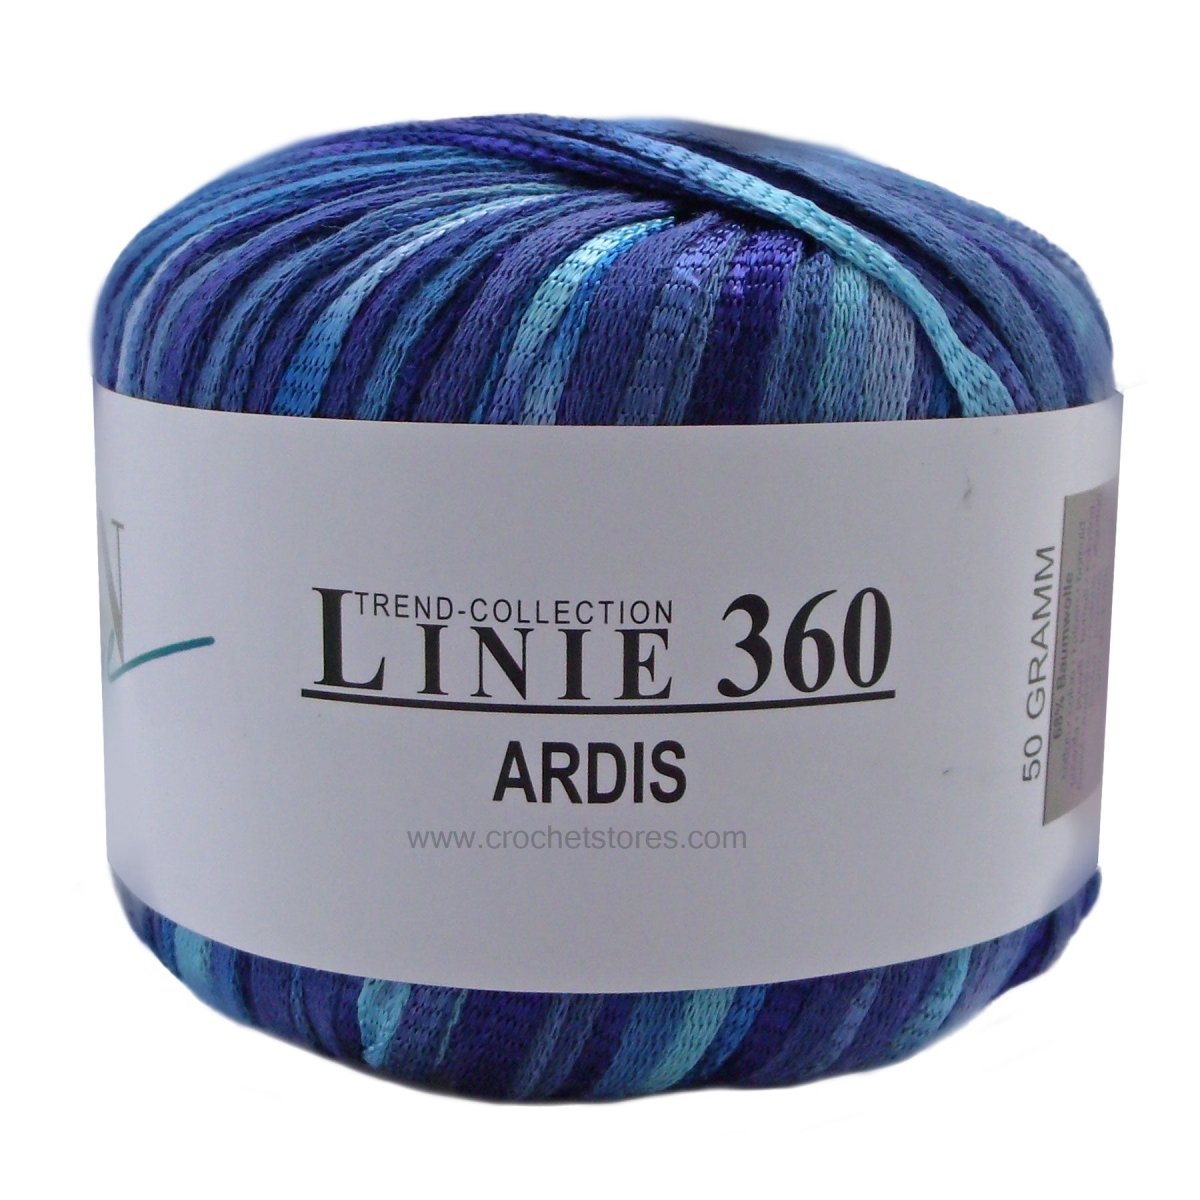 ARDIS - Crochetstores110360-1074014366152804